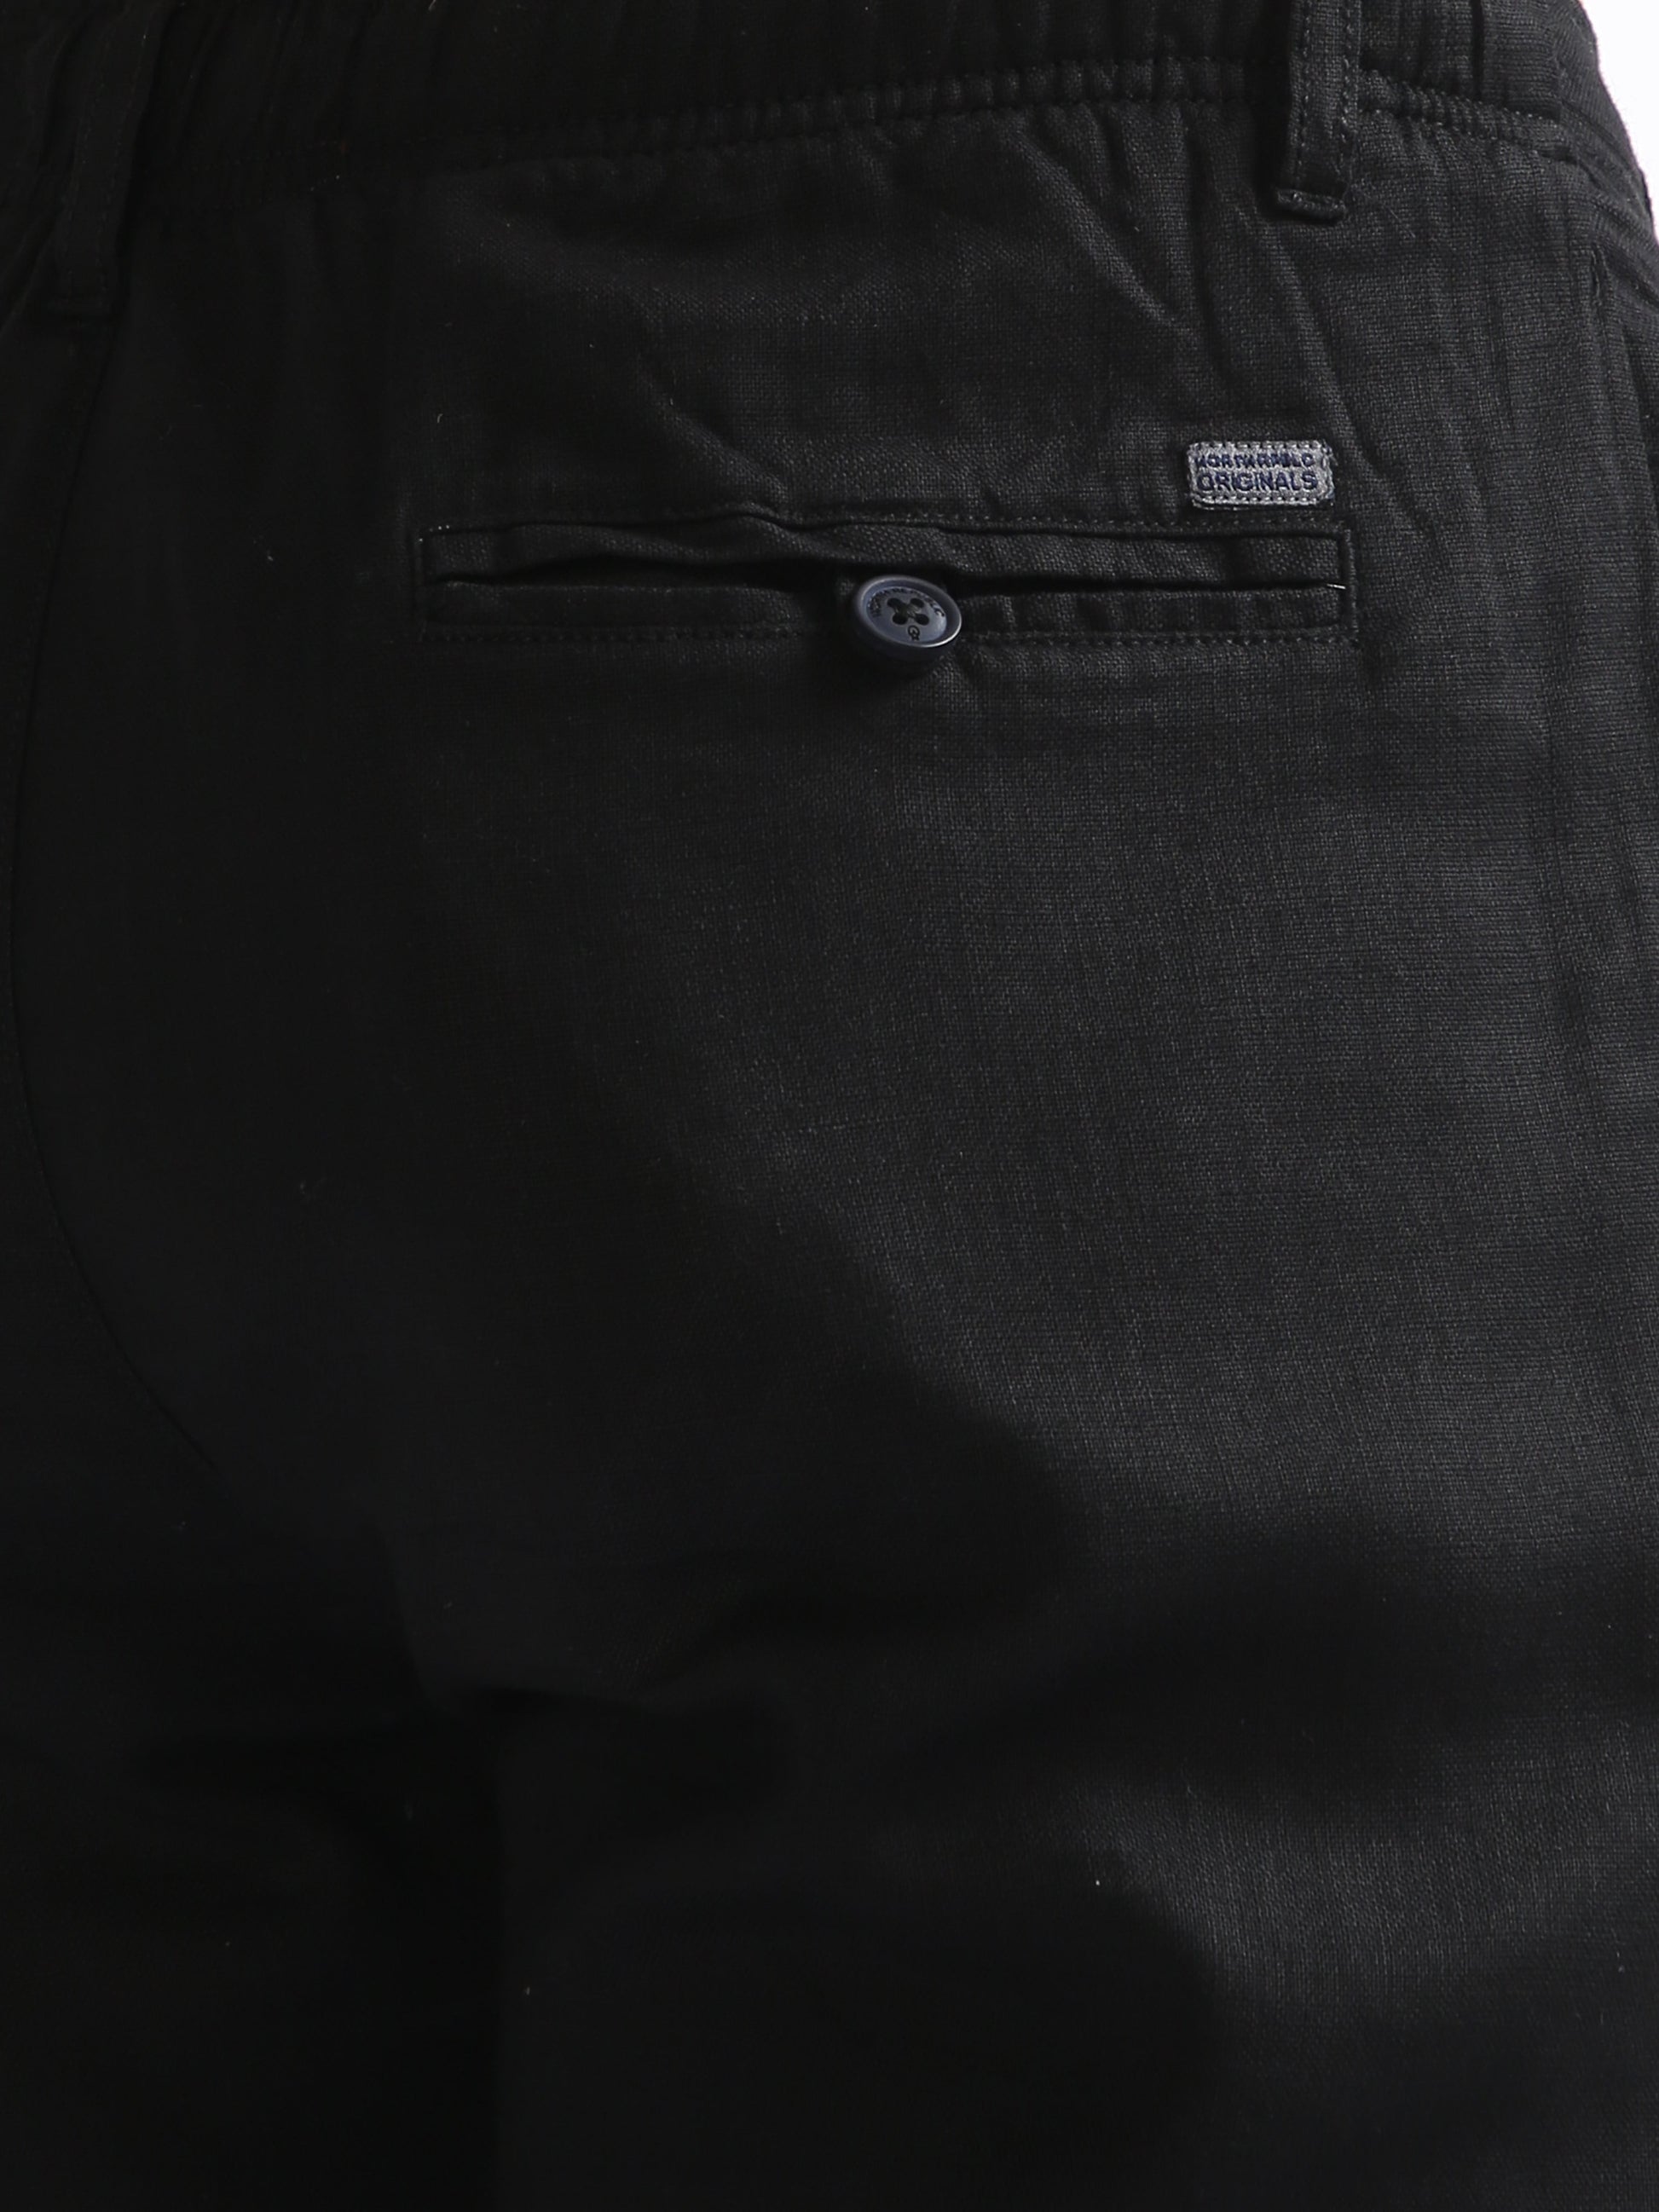 Black Drawcod Linen Fashion Pant